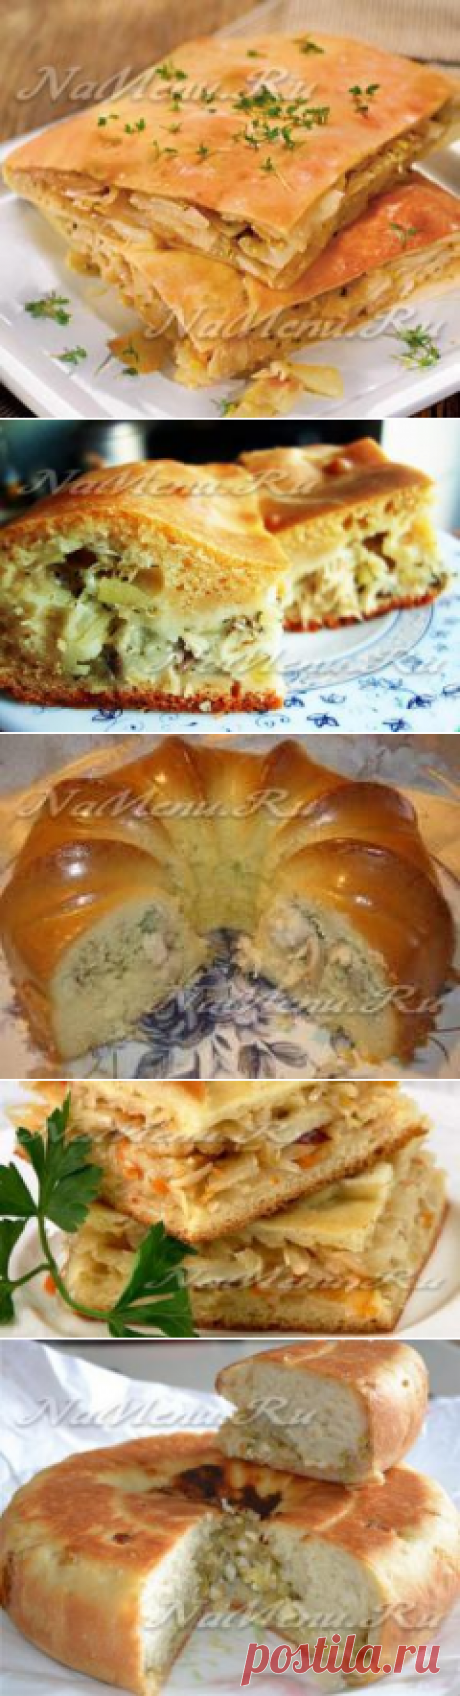 Пирог с капустой: рецепты самых вкусных пирогов с капустой